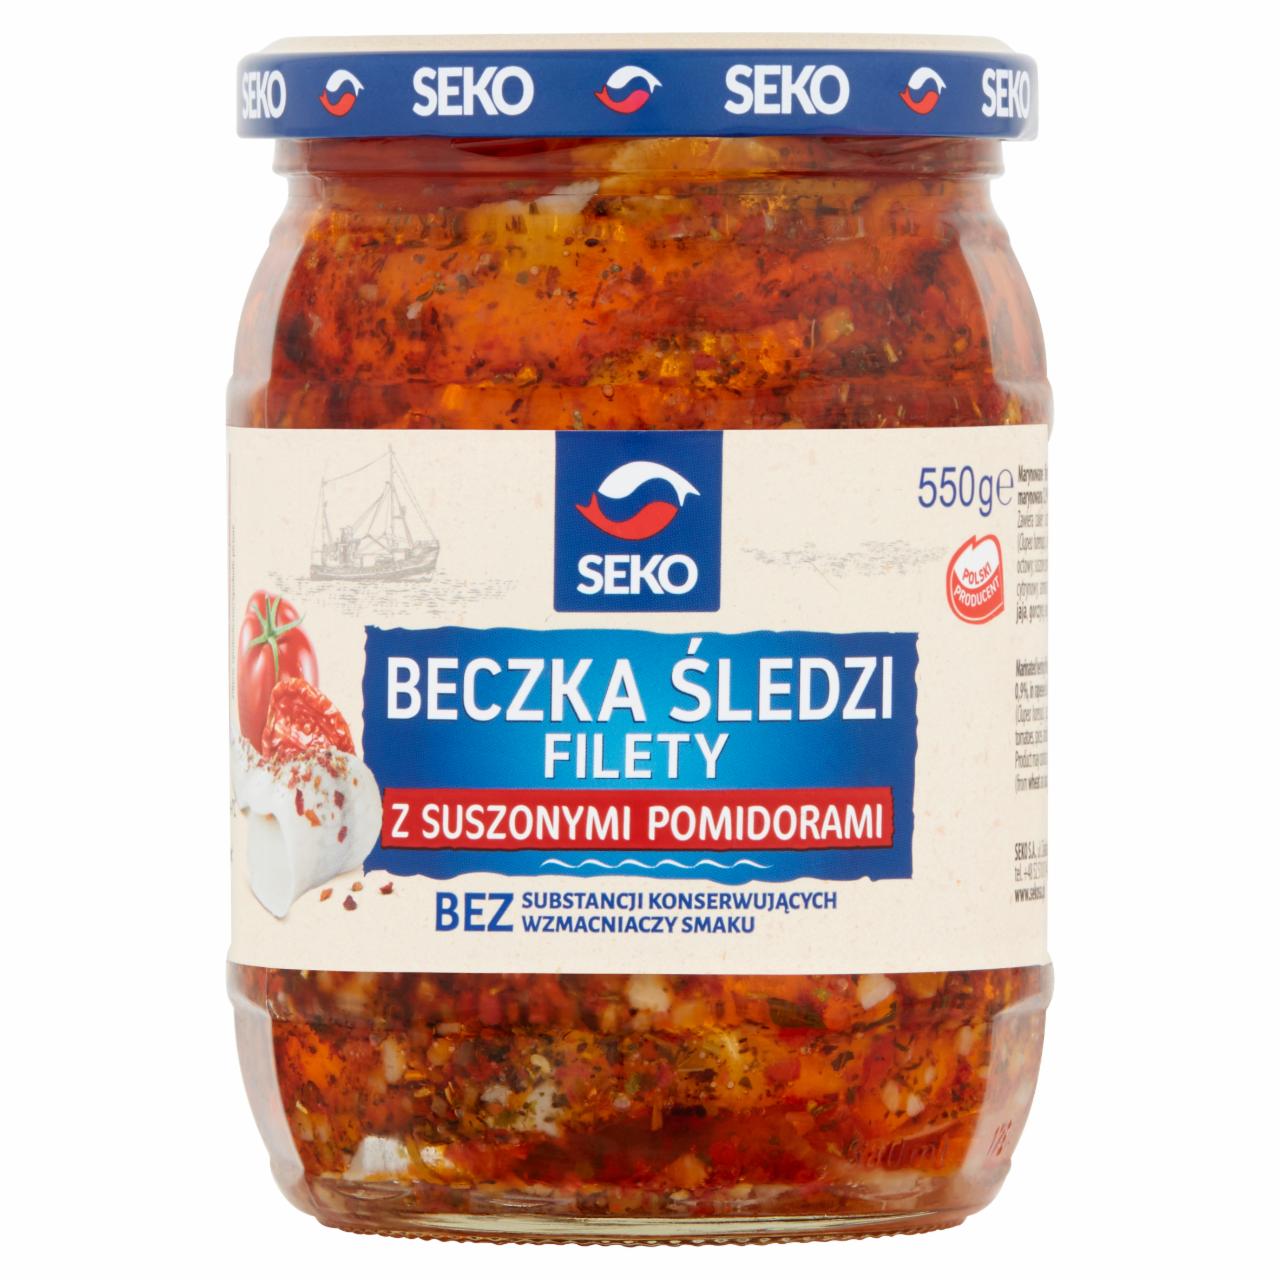 Zdjęcia - Seko Beczka śledzi Filety z suszonymi pomidorami 550 g